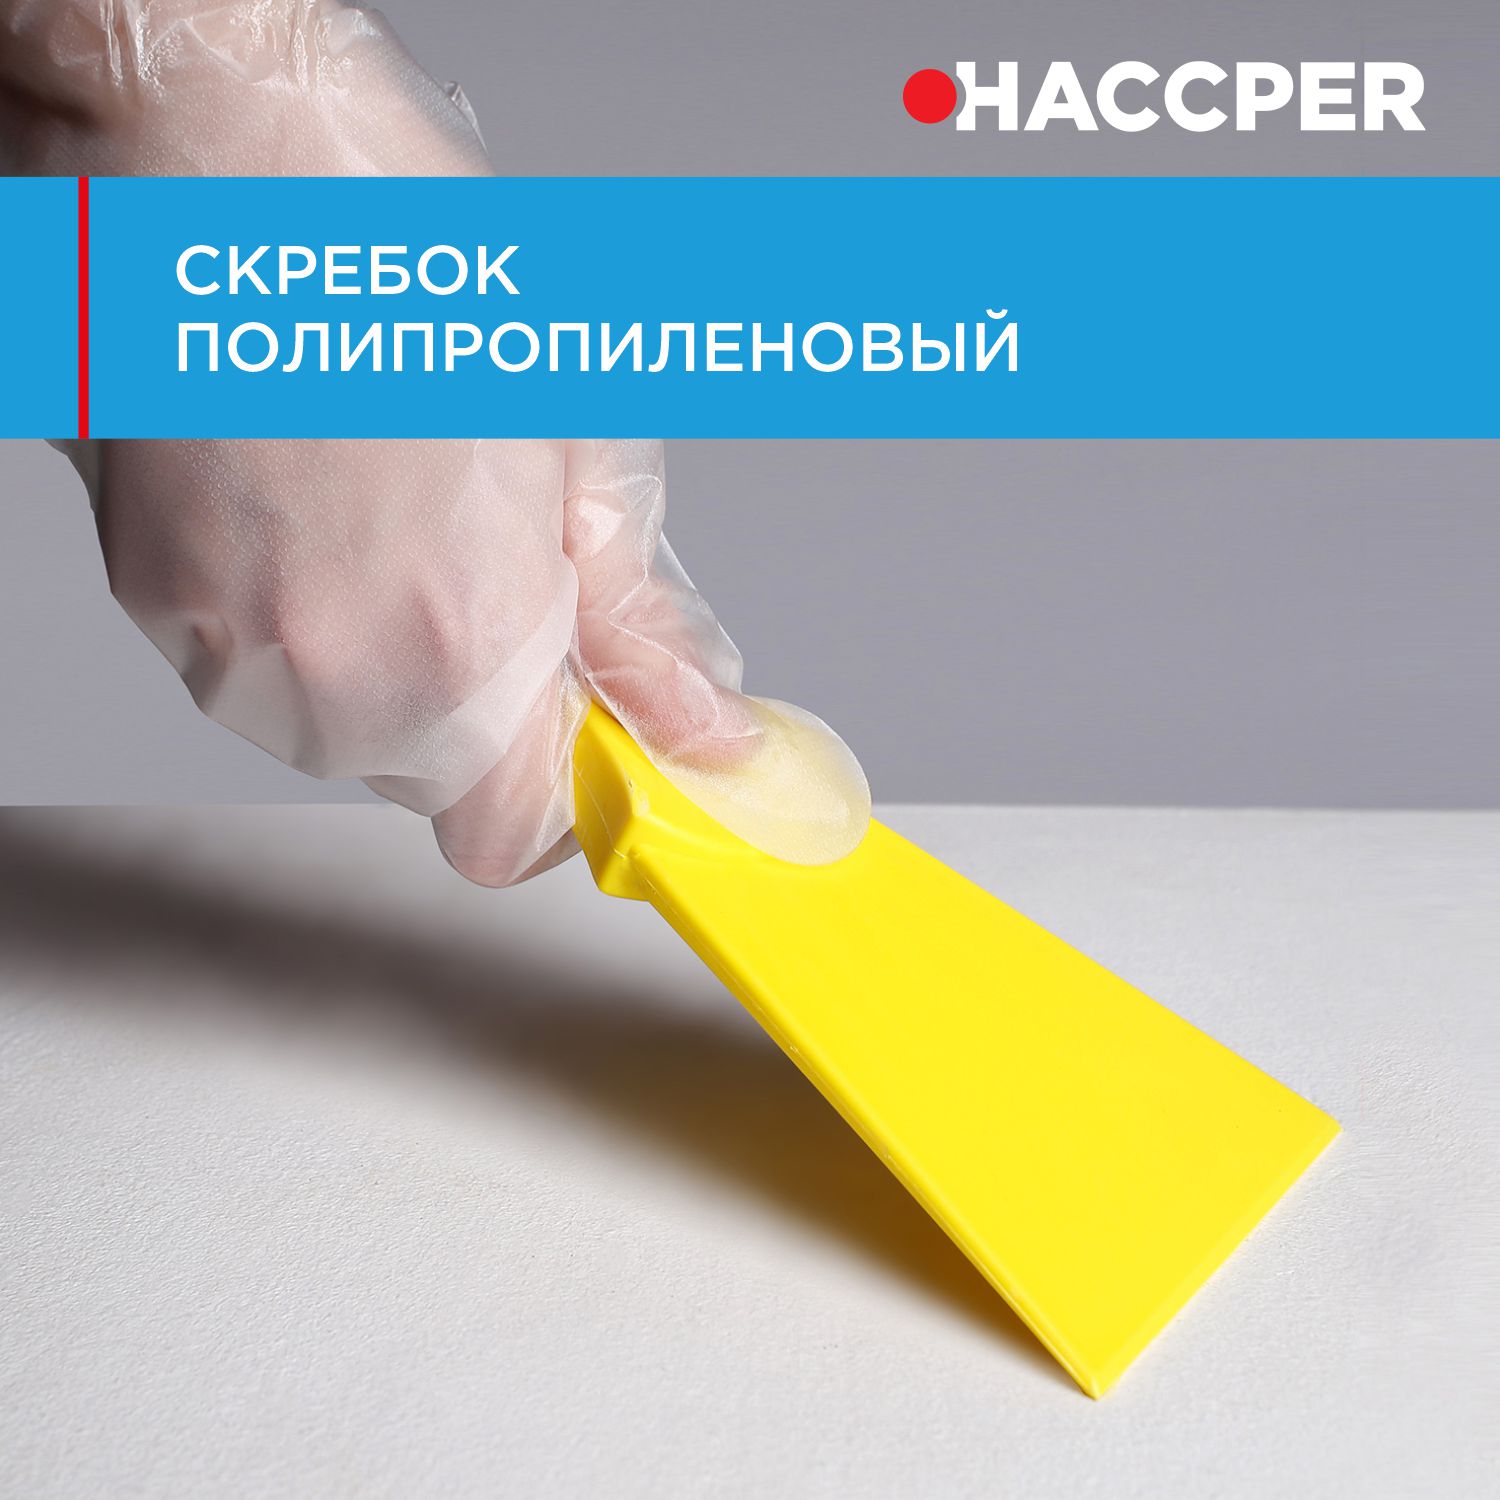 Скребок HACCPER полипропиленовый, 100 мм, желтый